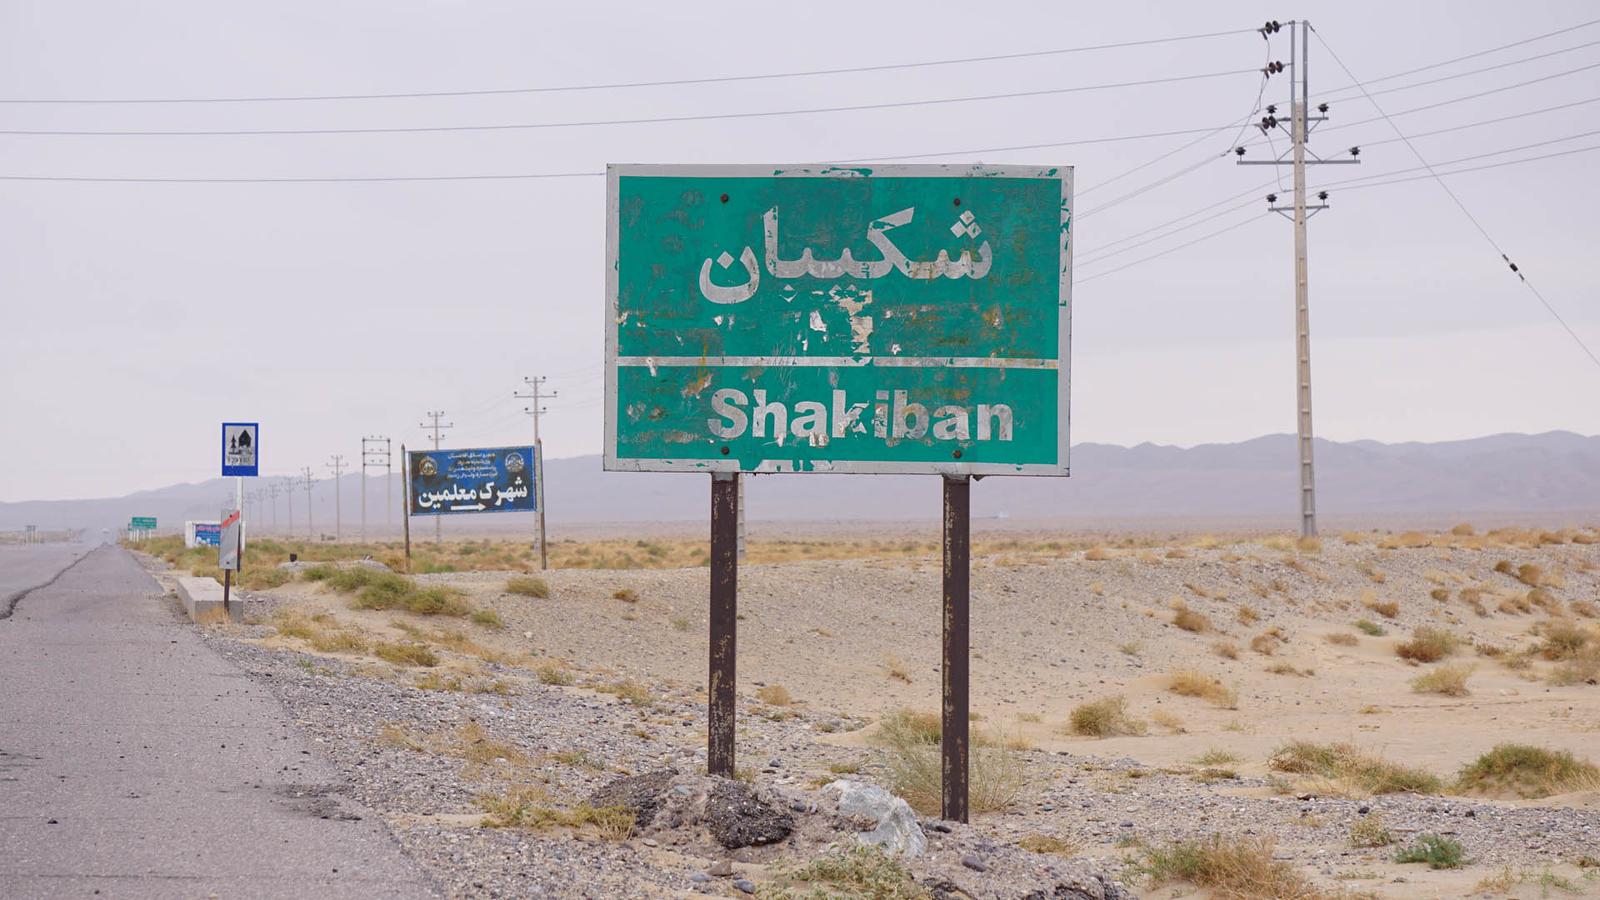 Shakiban